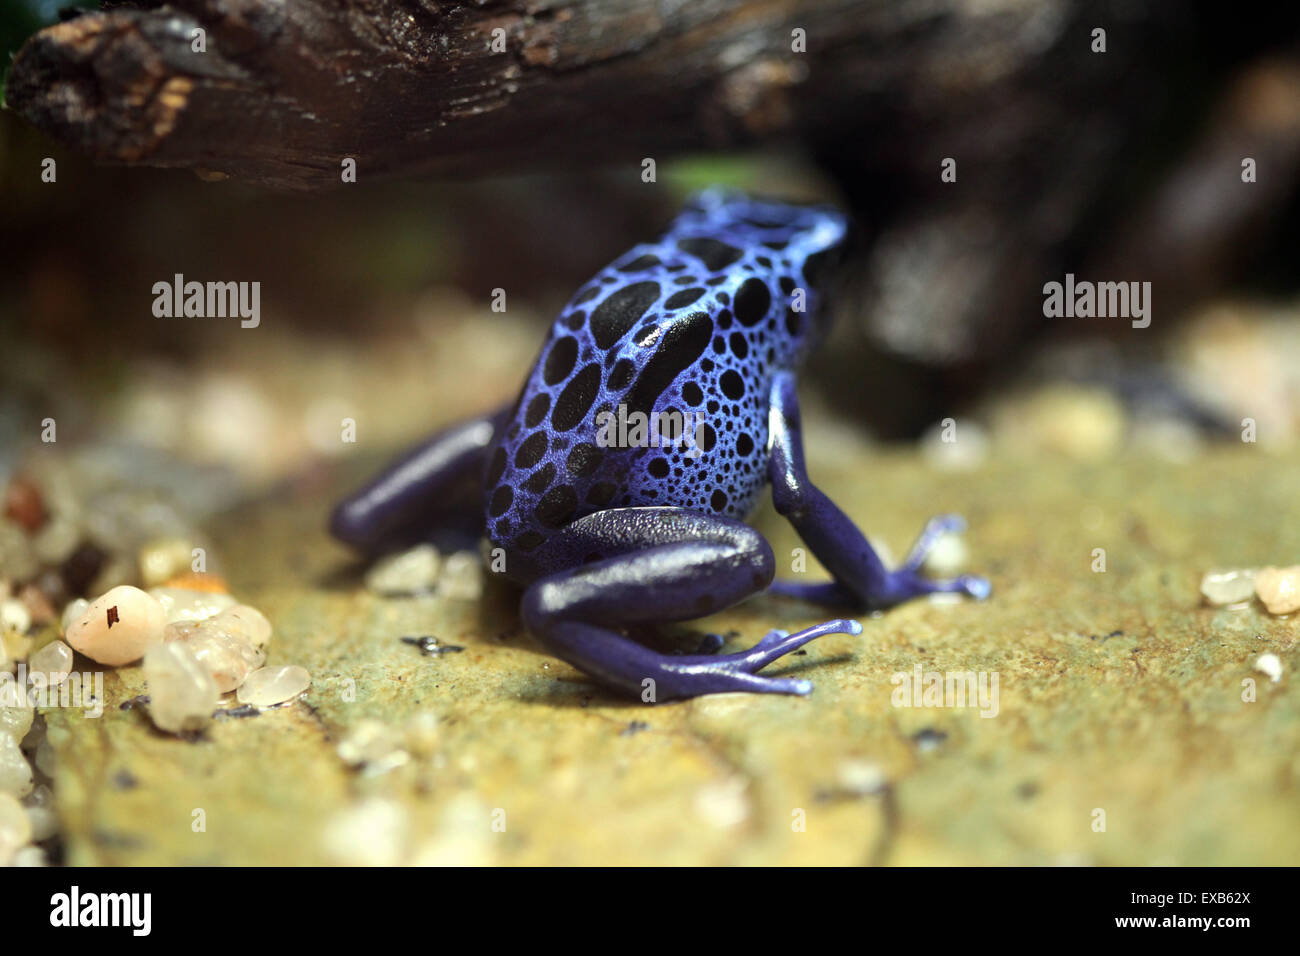 Blue poison dart frog (Dentrobates azureus), también conocida como la rana flecha venenosa azul en el Zoo de Usti nad Labem, República Checa. Foto de stock